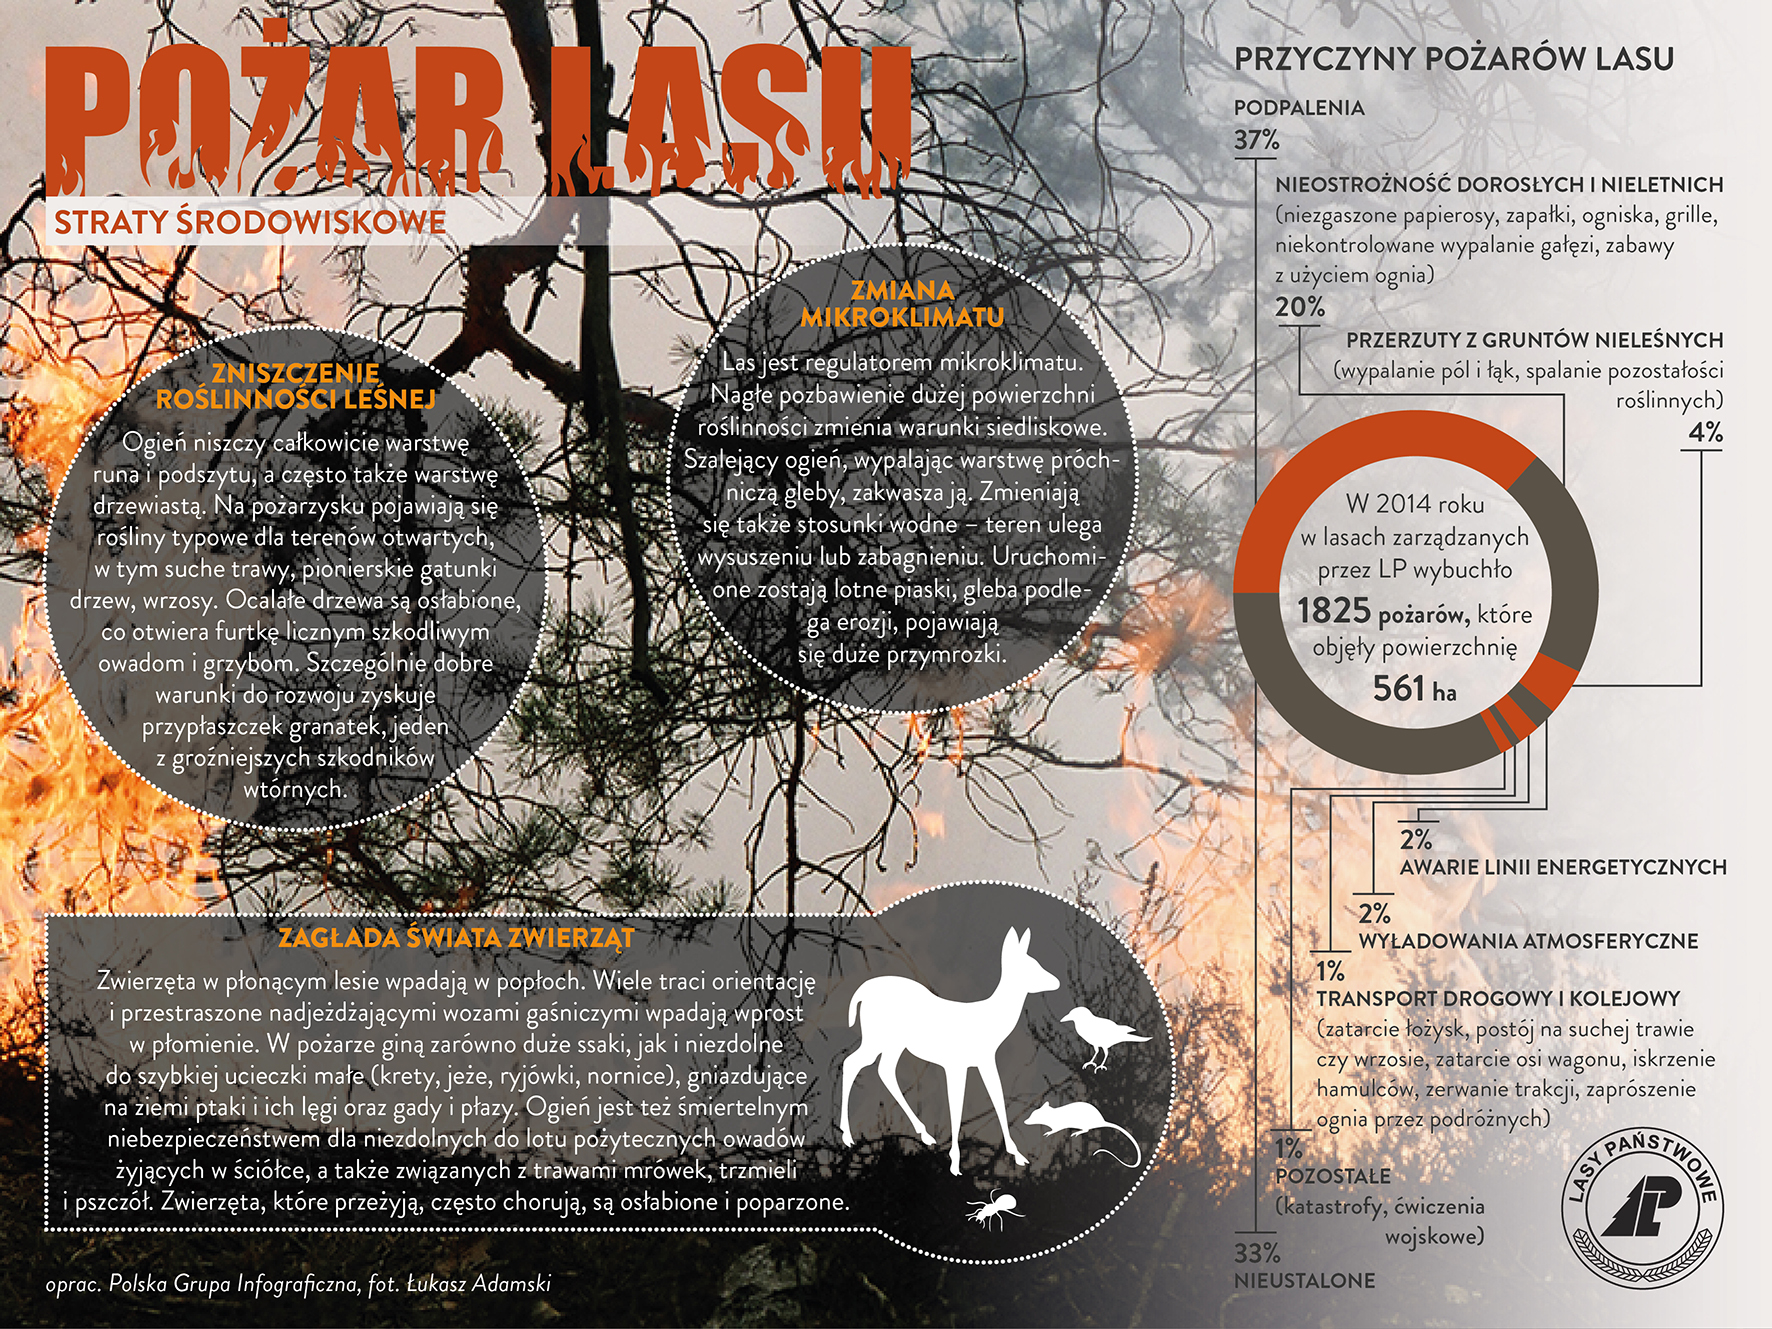 Zdjęcie przedstawia infografikę CILP – Pożar lasu i straty środowiskowe